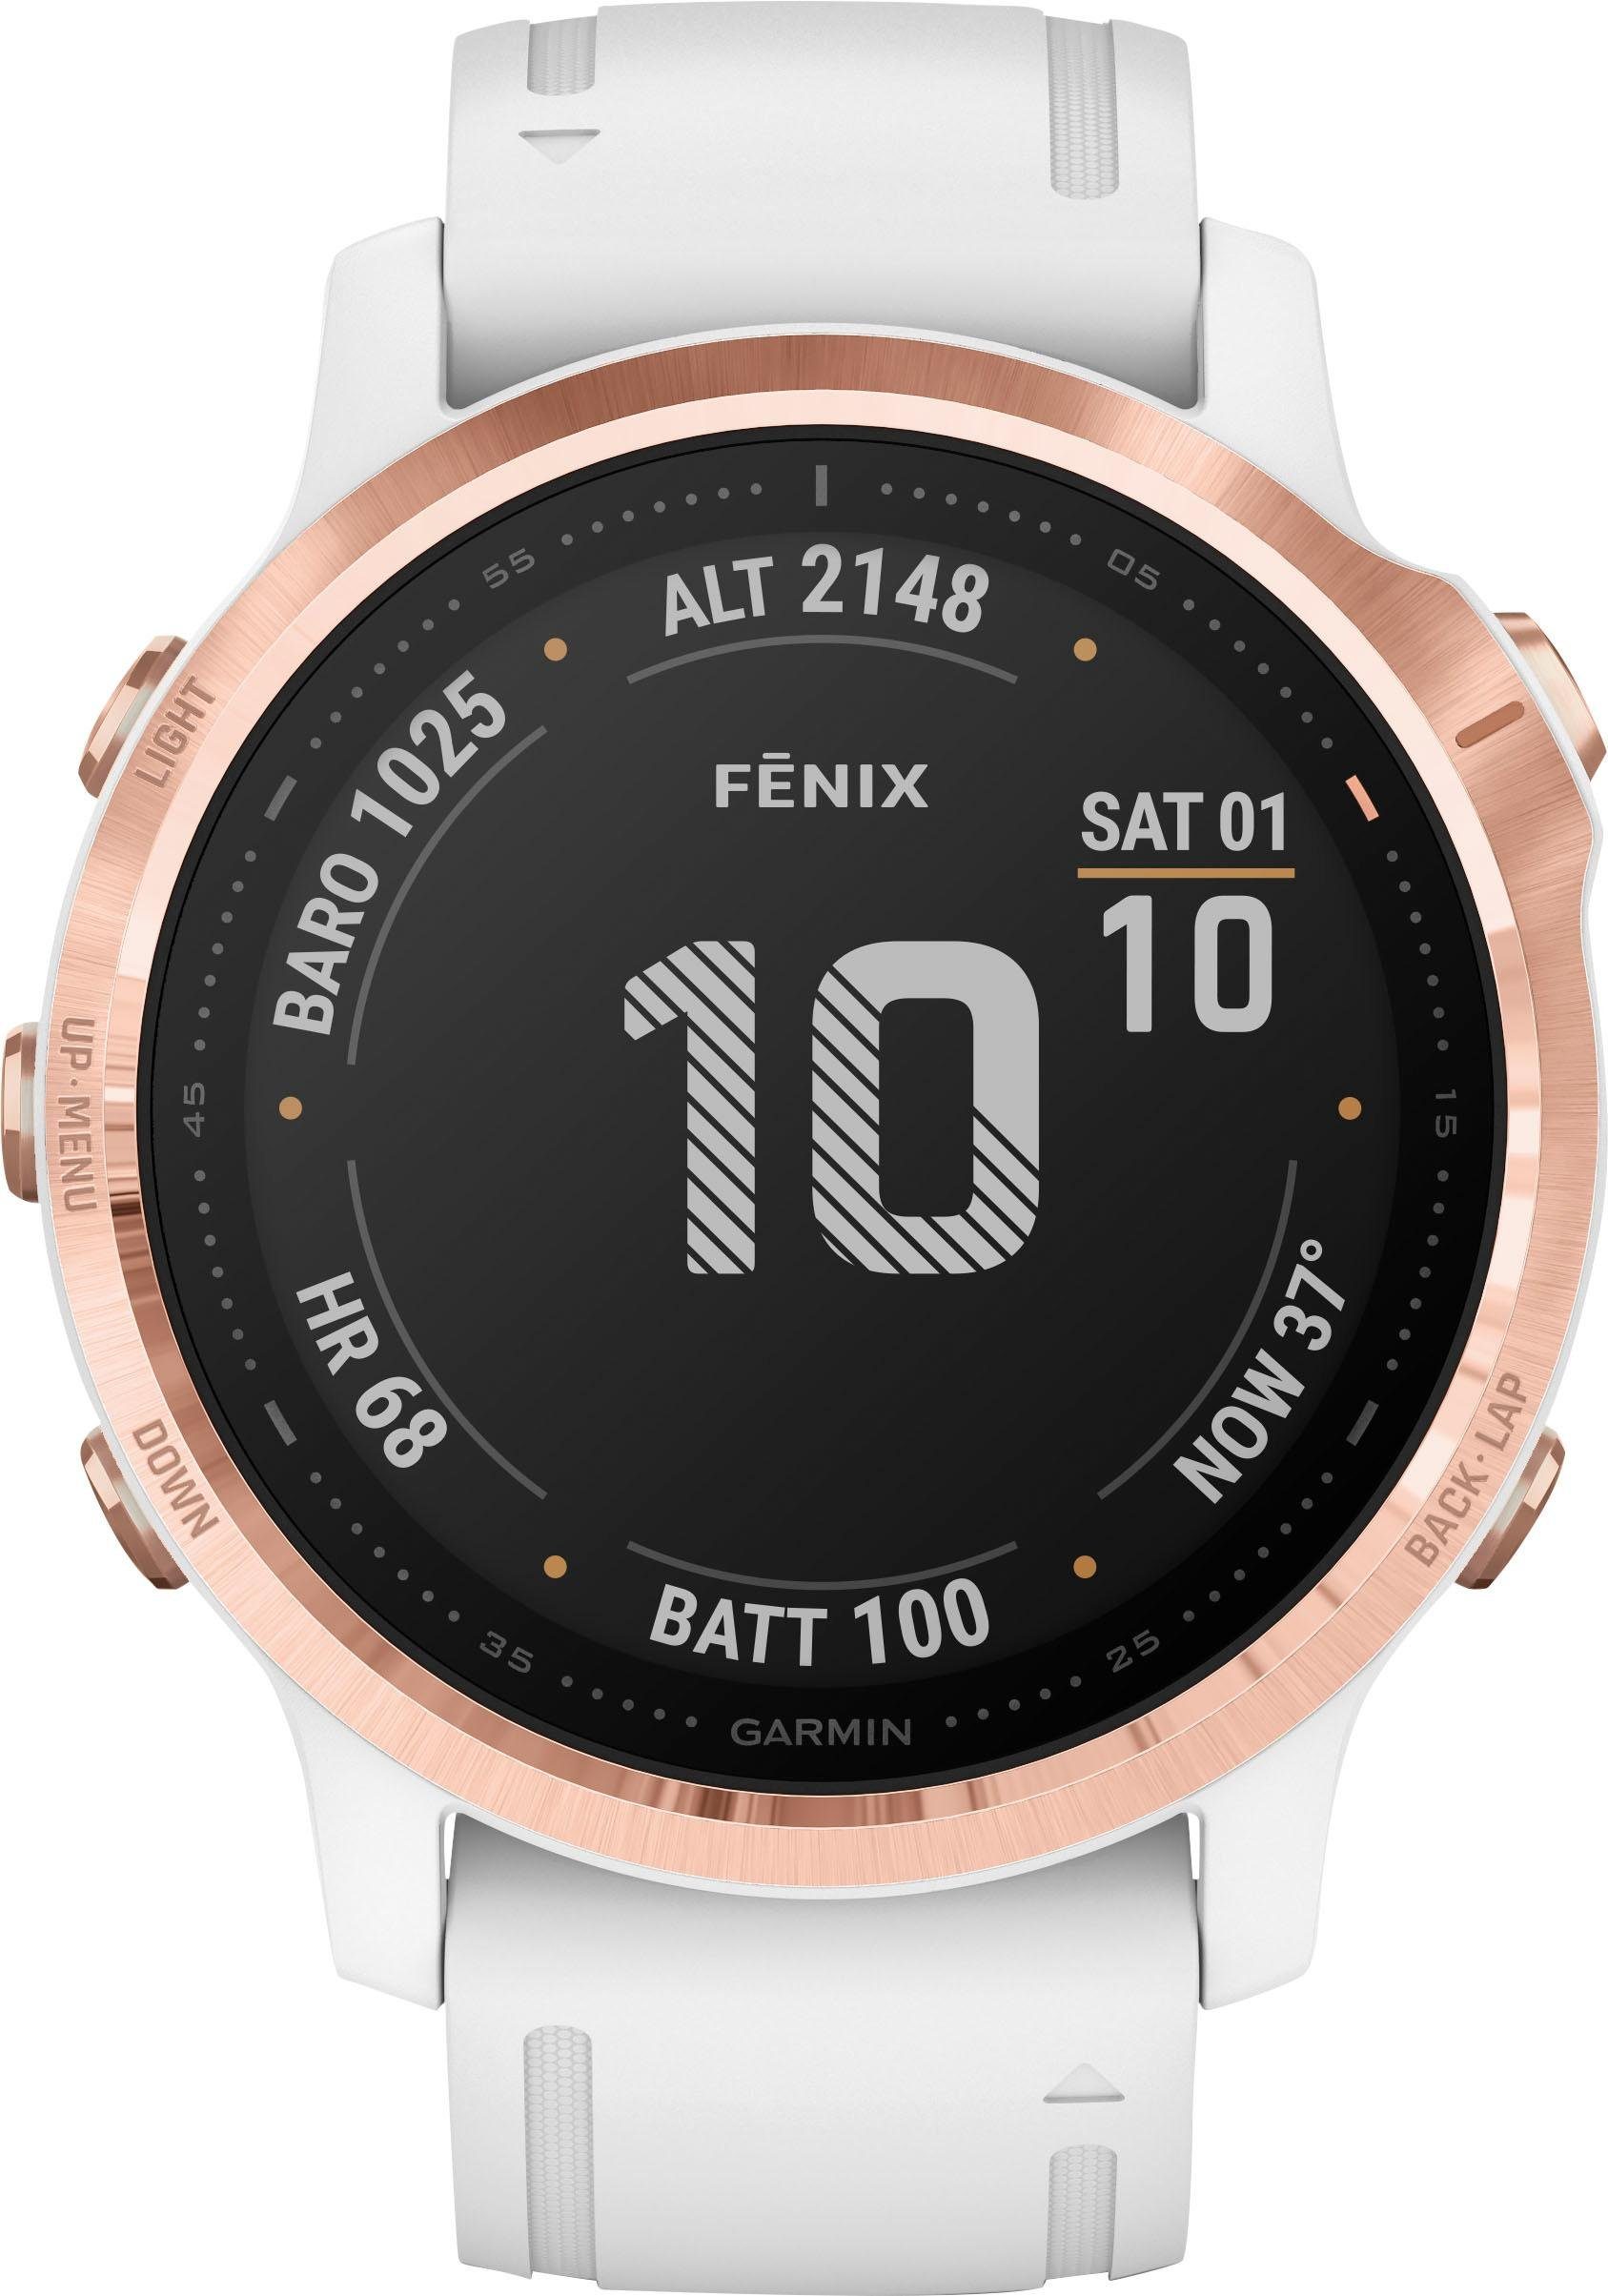 Garmin fēnix 6 S – Pro Smartwatch (3,04 cm/1,2 Zoll) online kaufen | OTTO